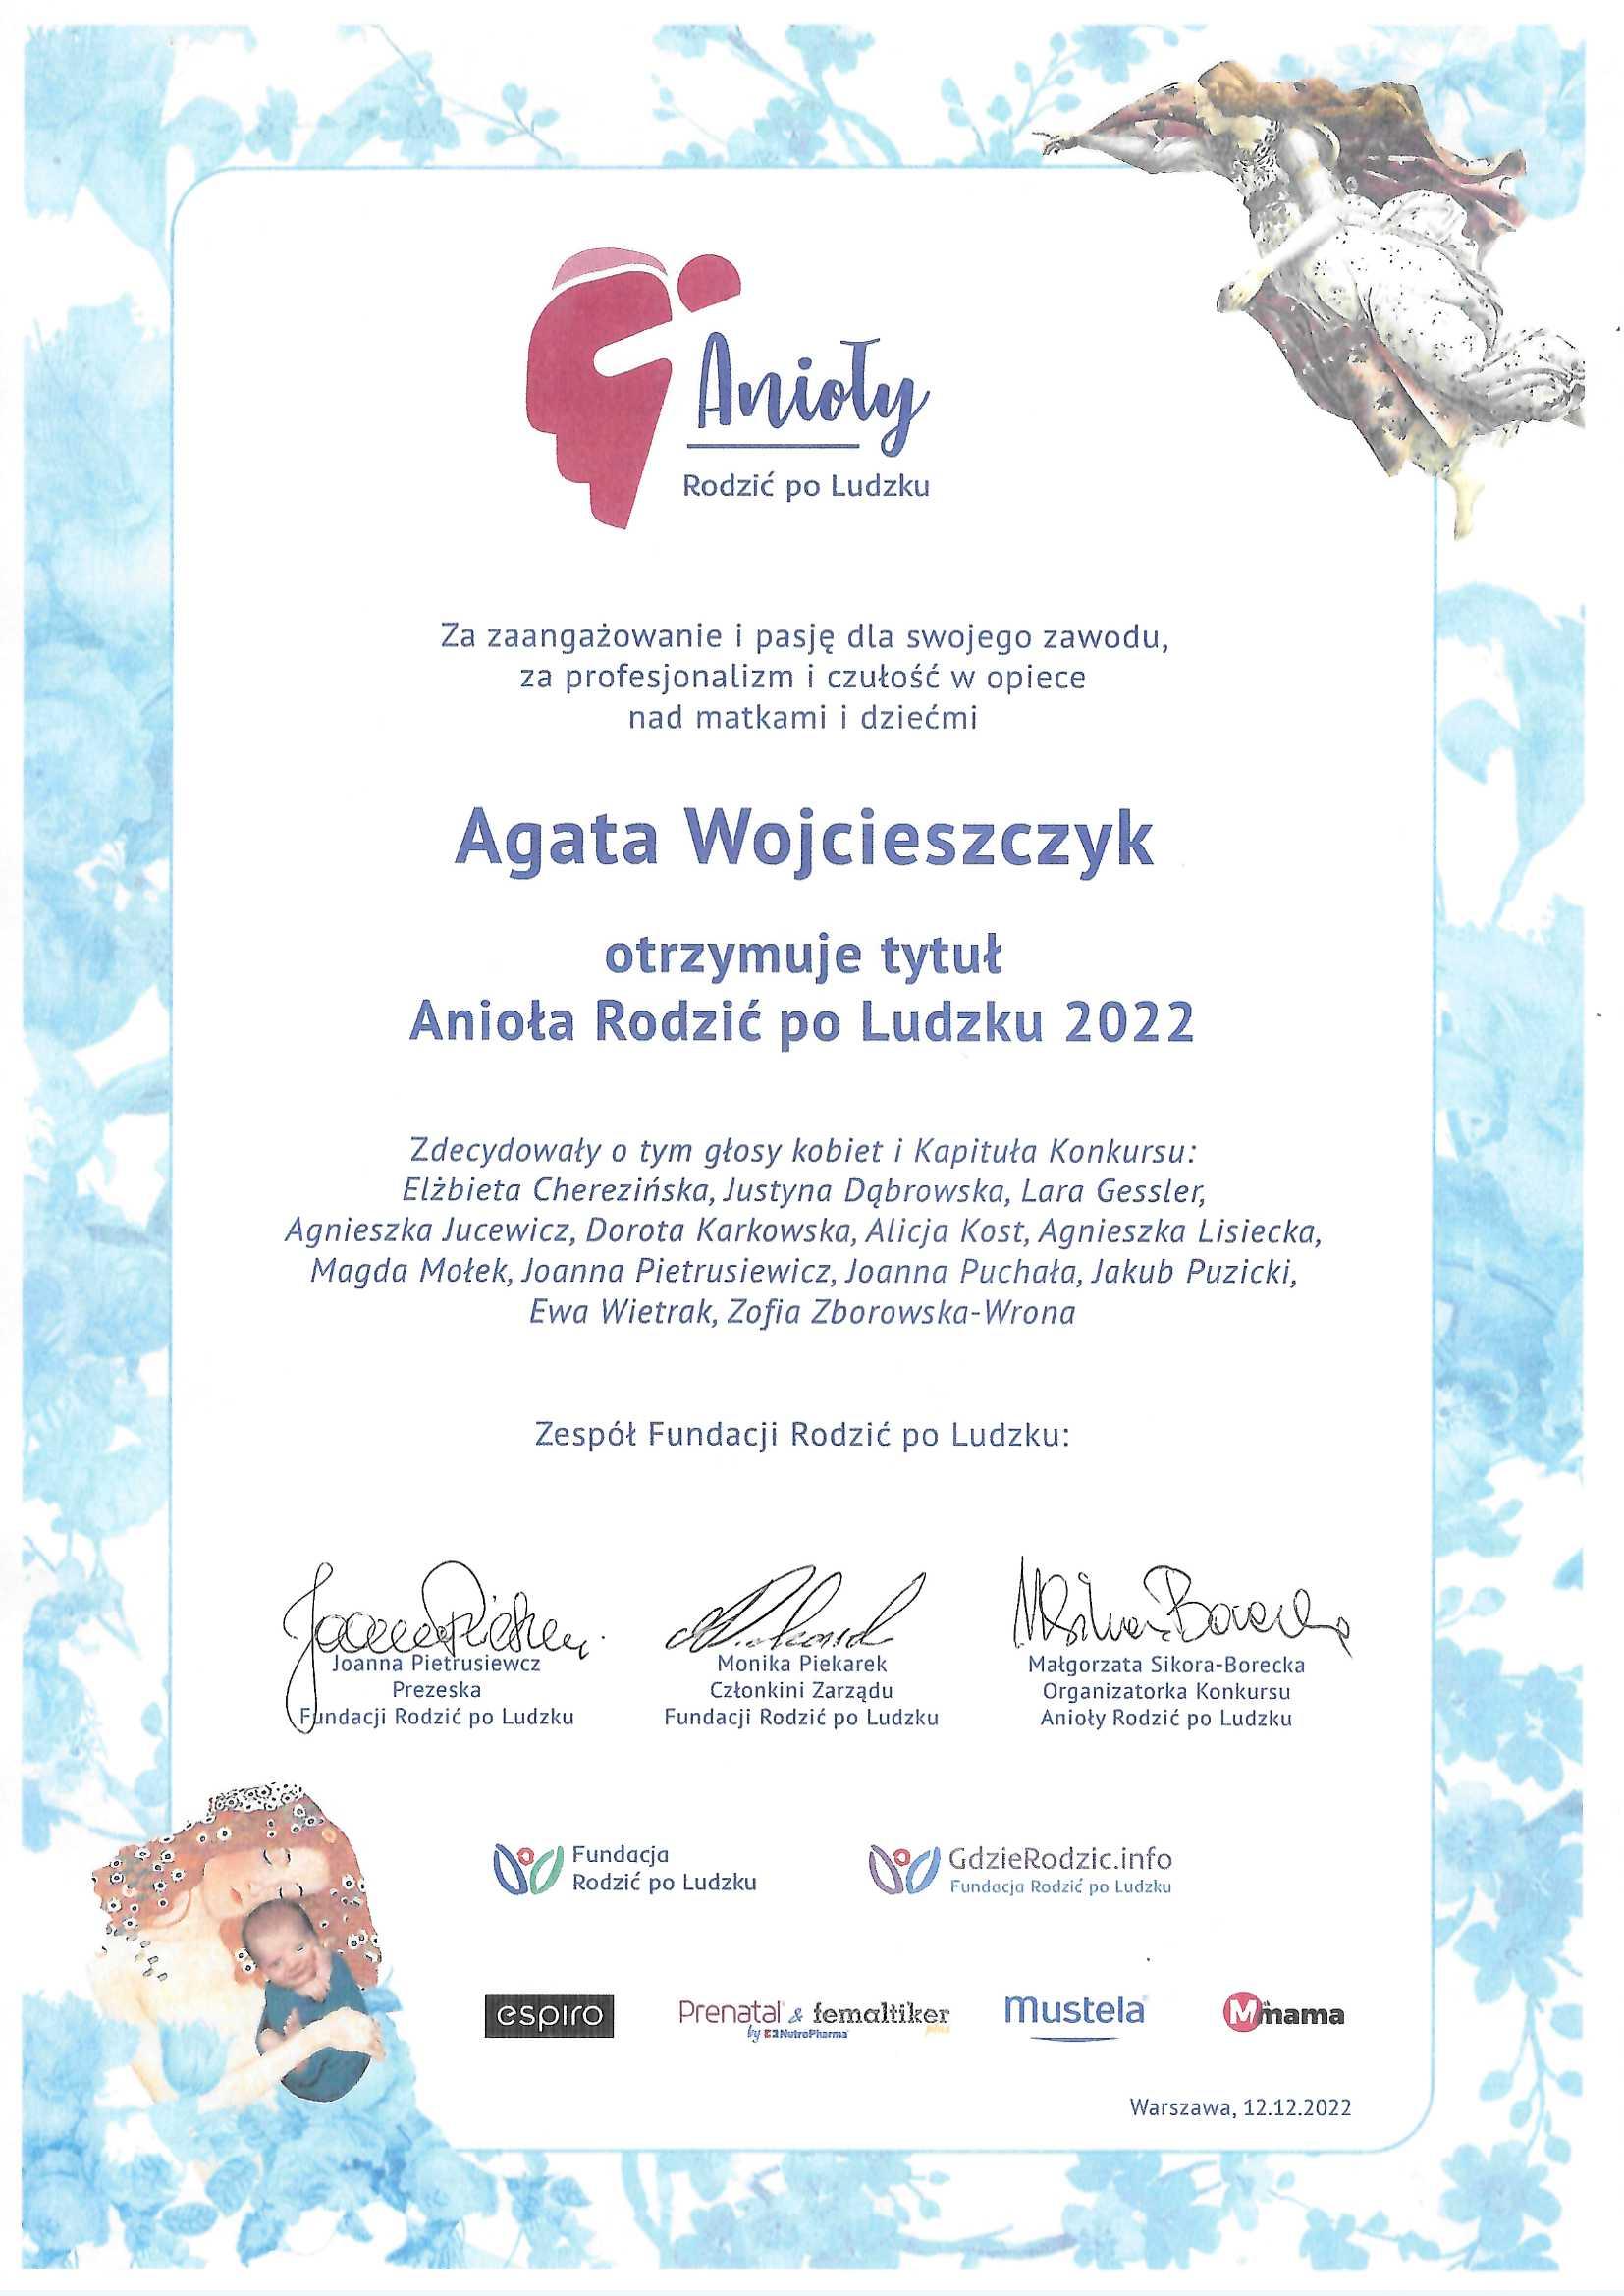 Certyfiikat informujący, że położna Agata Wojcieszczyk otrzymała tytuł Anioła Rodzic po Ludzku 2022